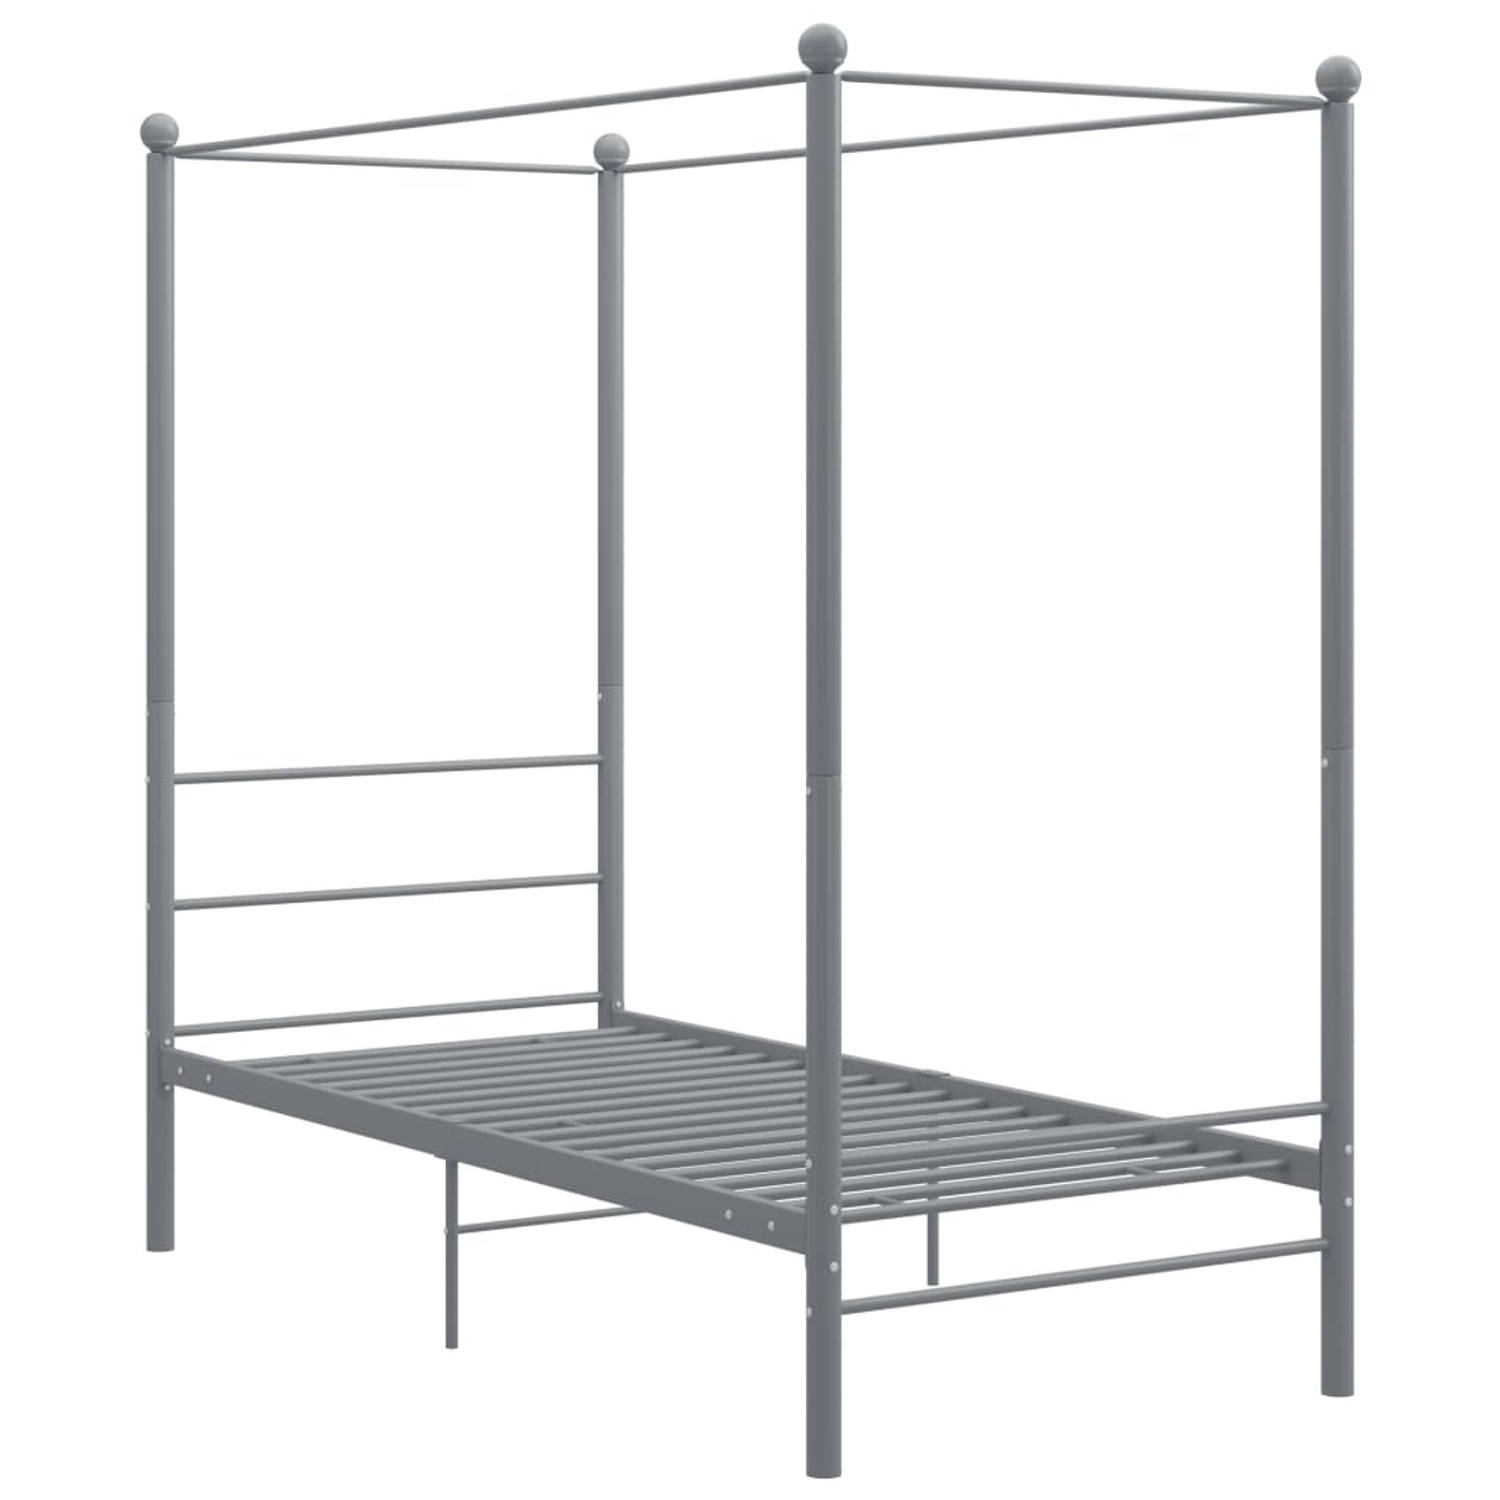 The Living Store Hemelbedframe metaal grijs 90x200 cm - Bedframe - Bedframe - Bed Frame - Bed Frames - Bed - Bedden - Metalen Bedframe - Metalen Bedframes - 1-persoonsbed - 1